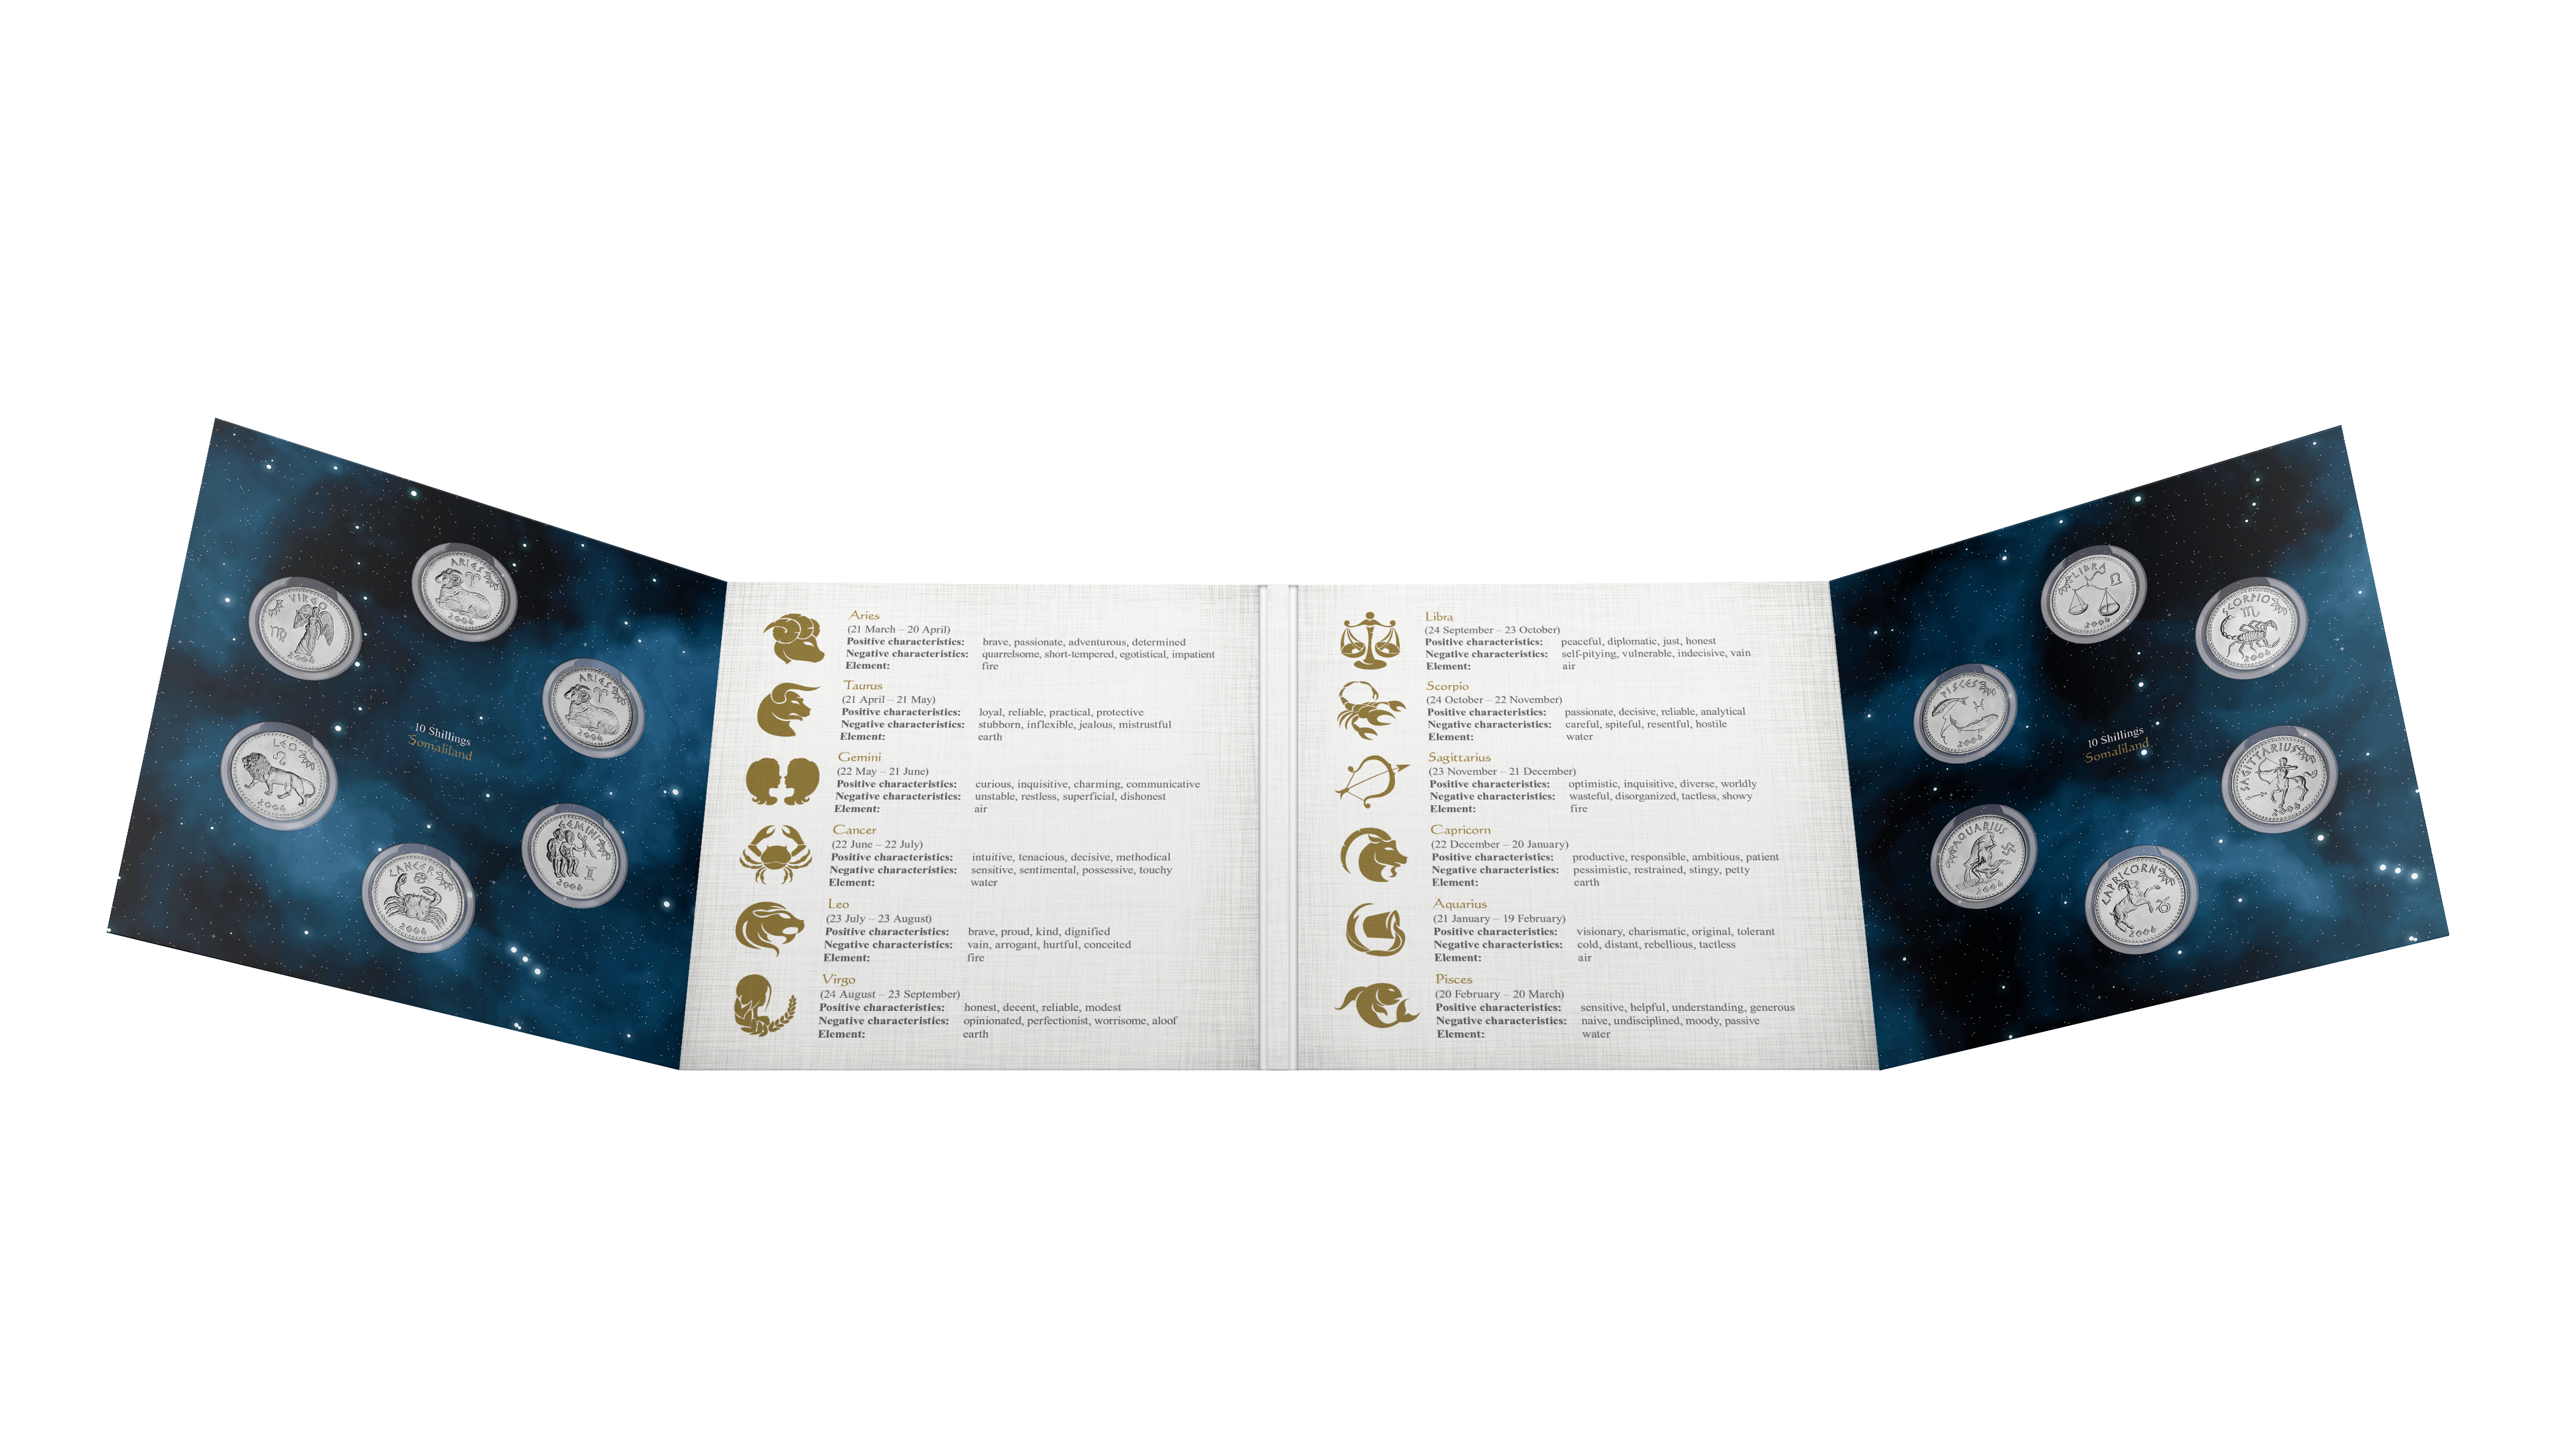 Voyage numismatique vers les étoiles - Collection Zodiaque